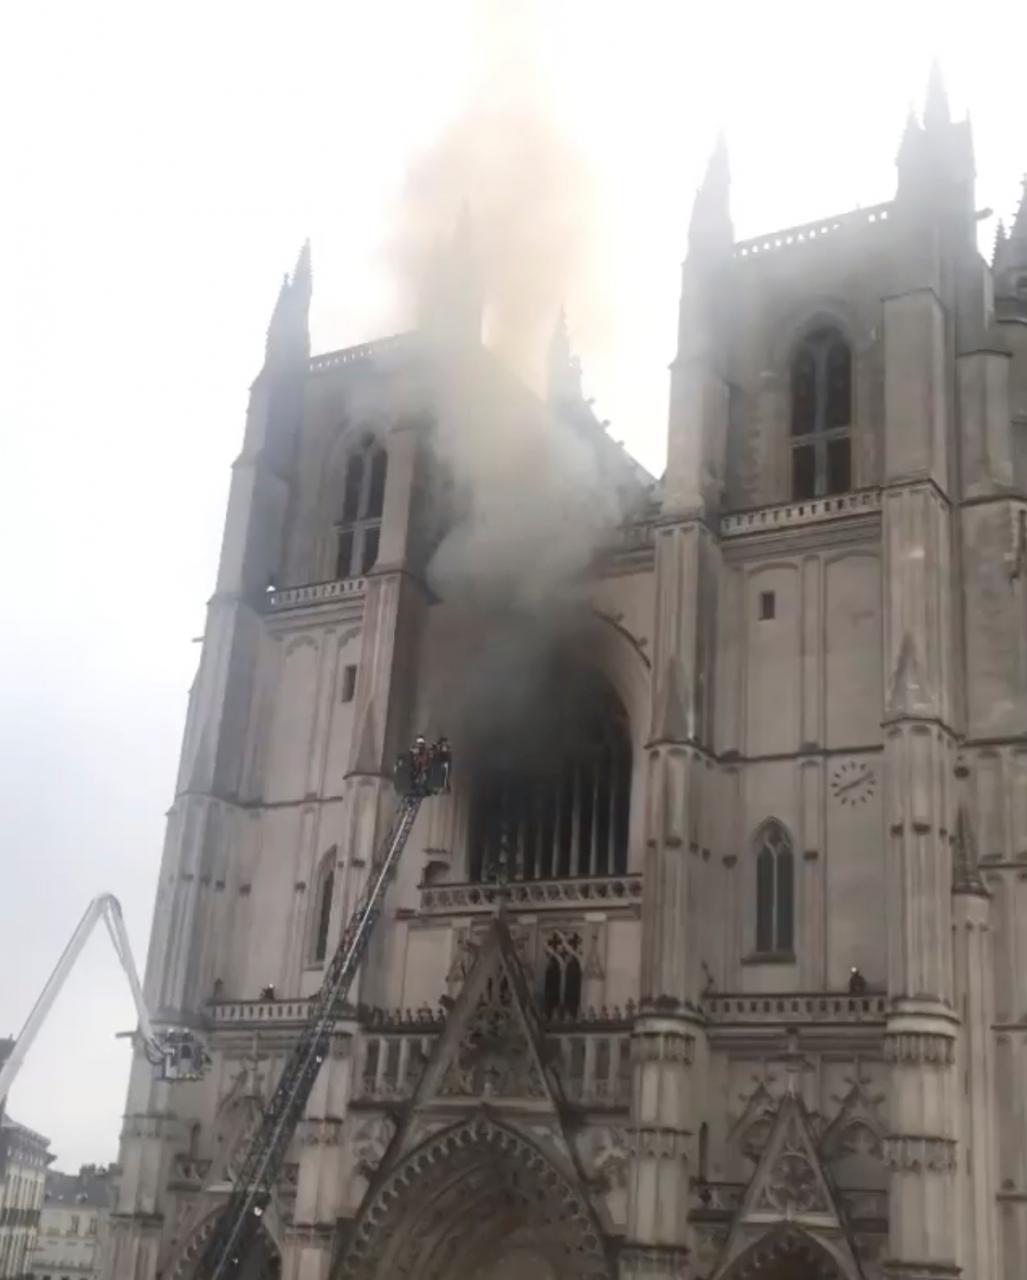 Airfeu incendio catedral nantes reflexion medidas seguridad contra incendios templos historicos